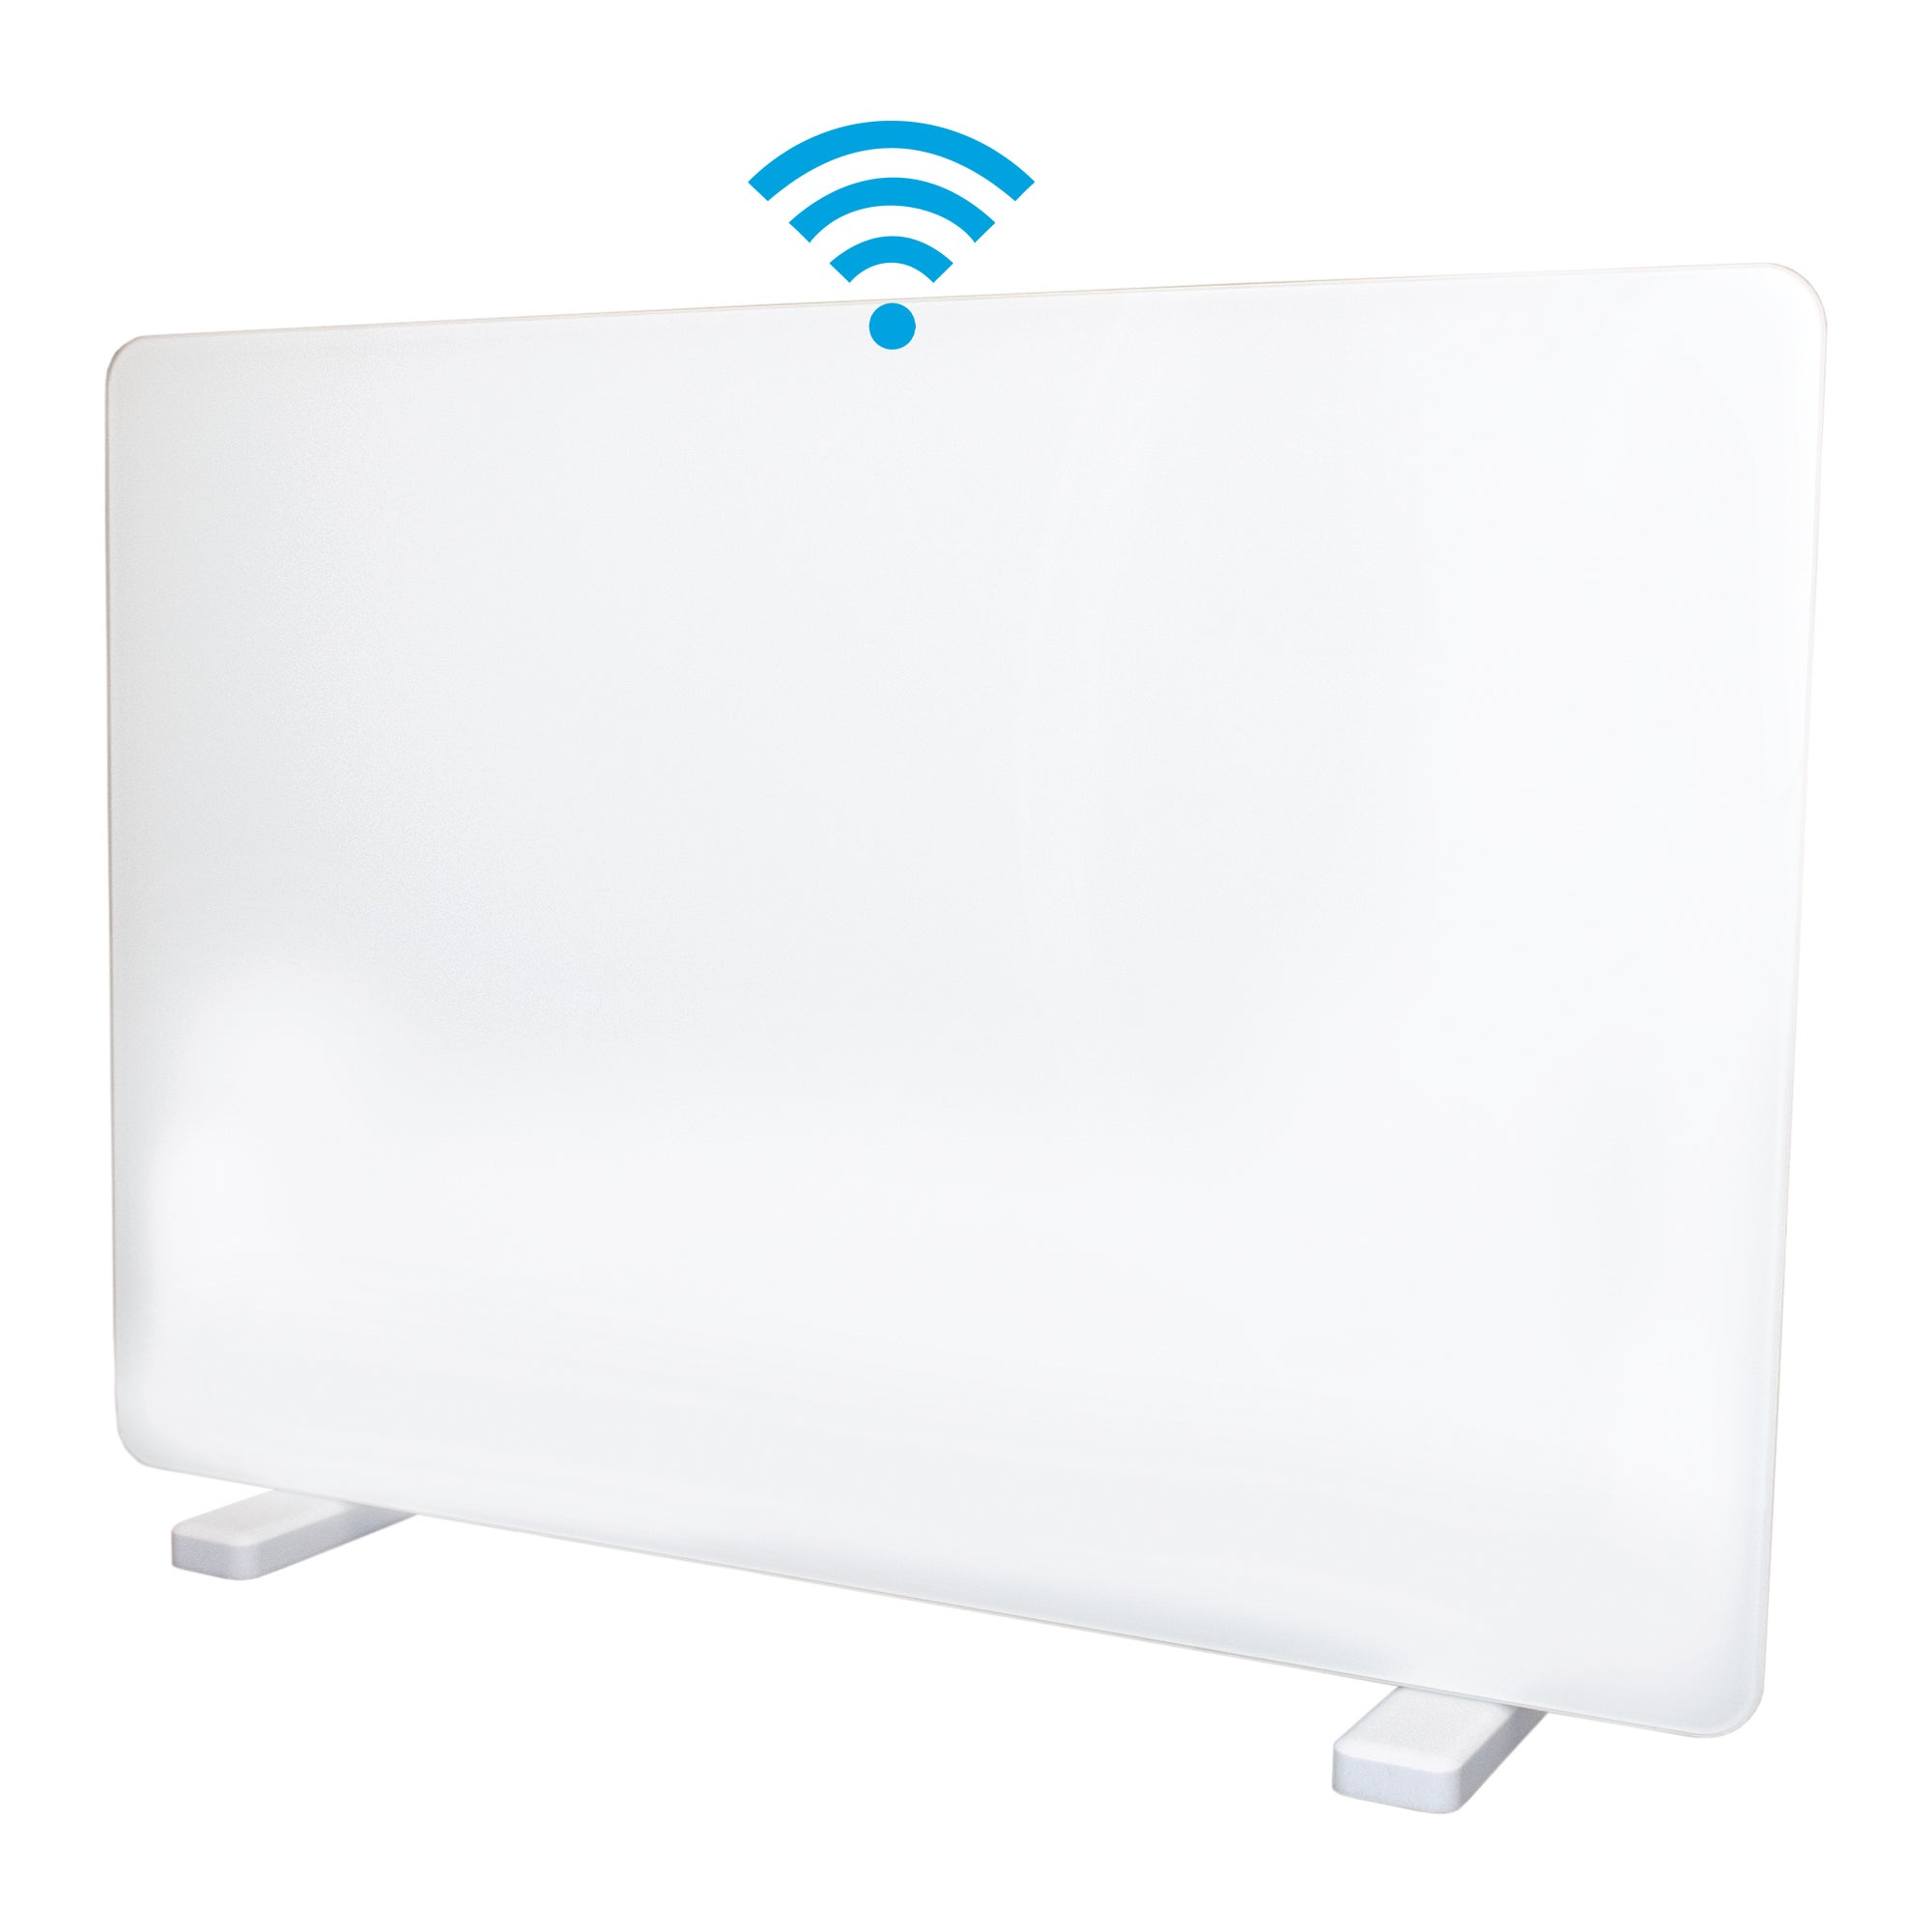 Dunelm White Igenix 2000W Smart Glass Panel Heater, 82cm x 66cm x 43cm White